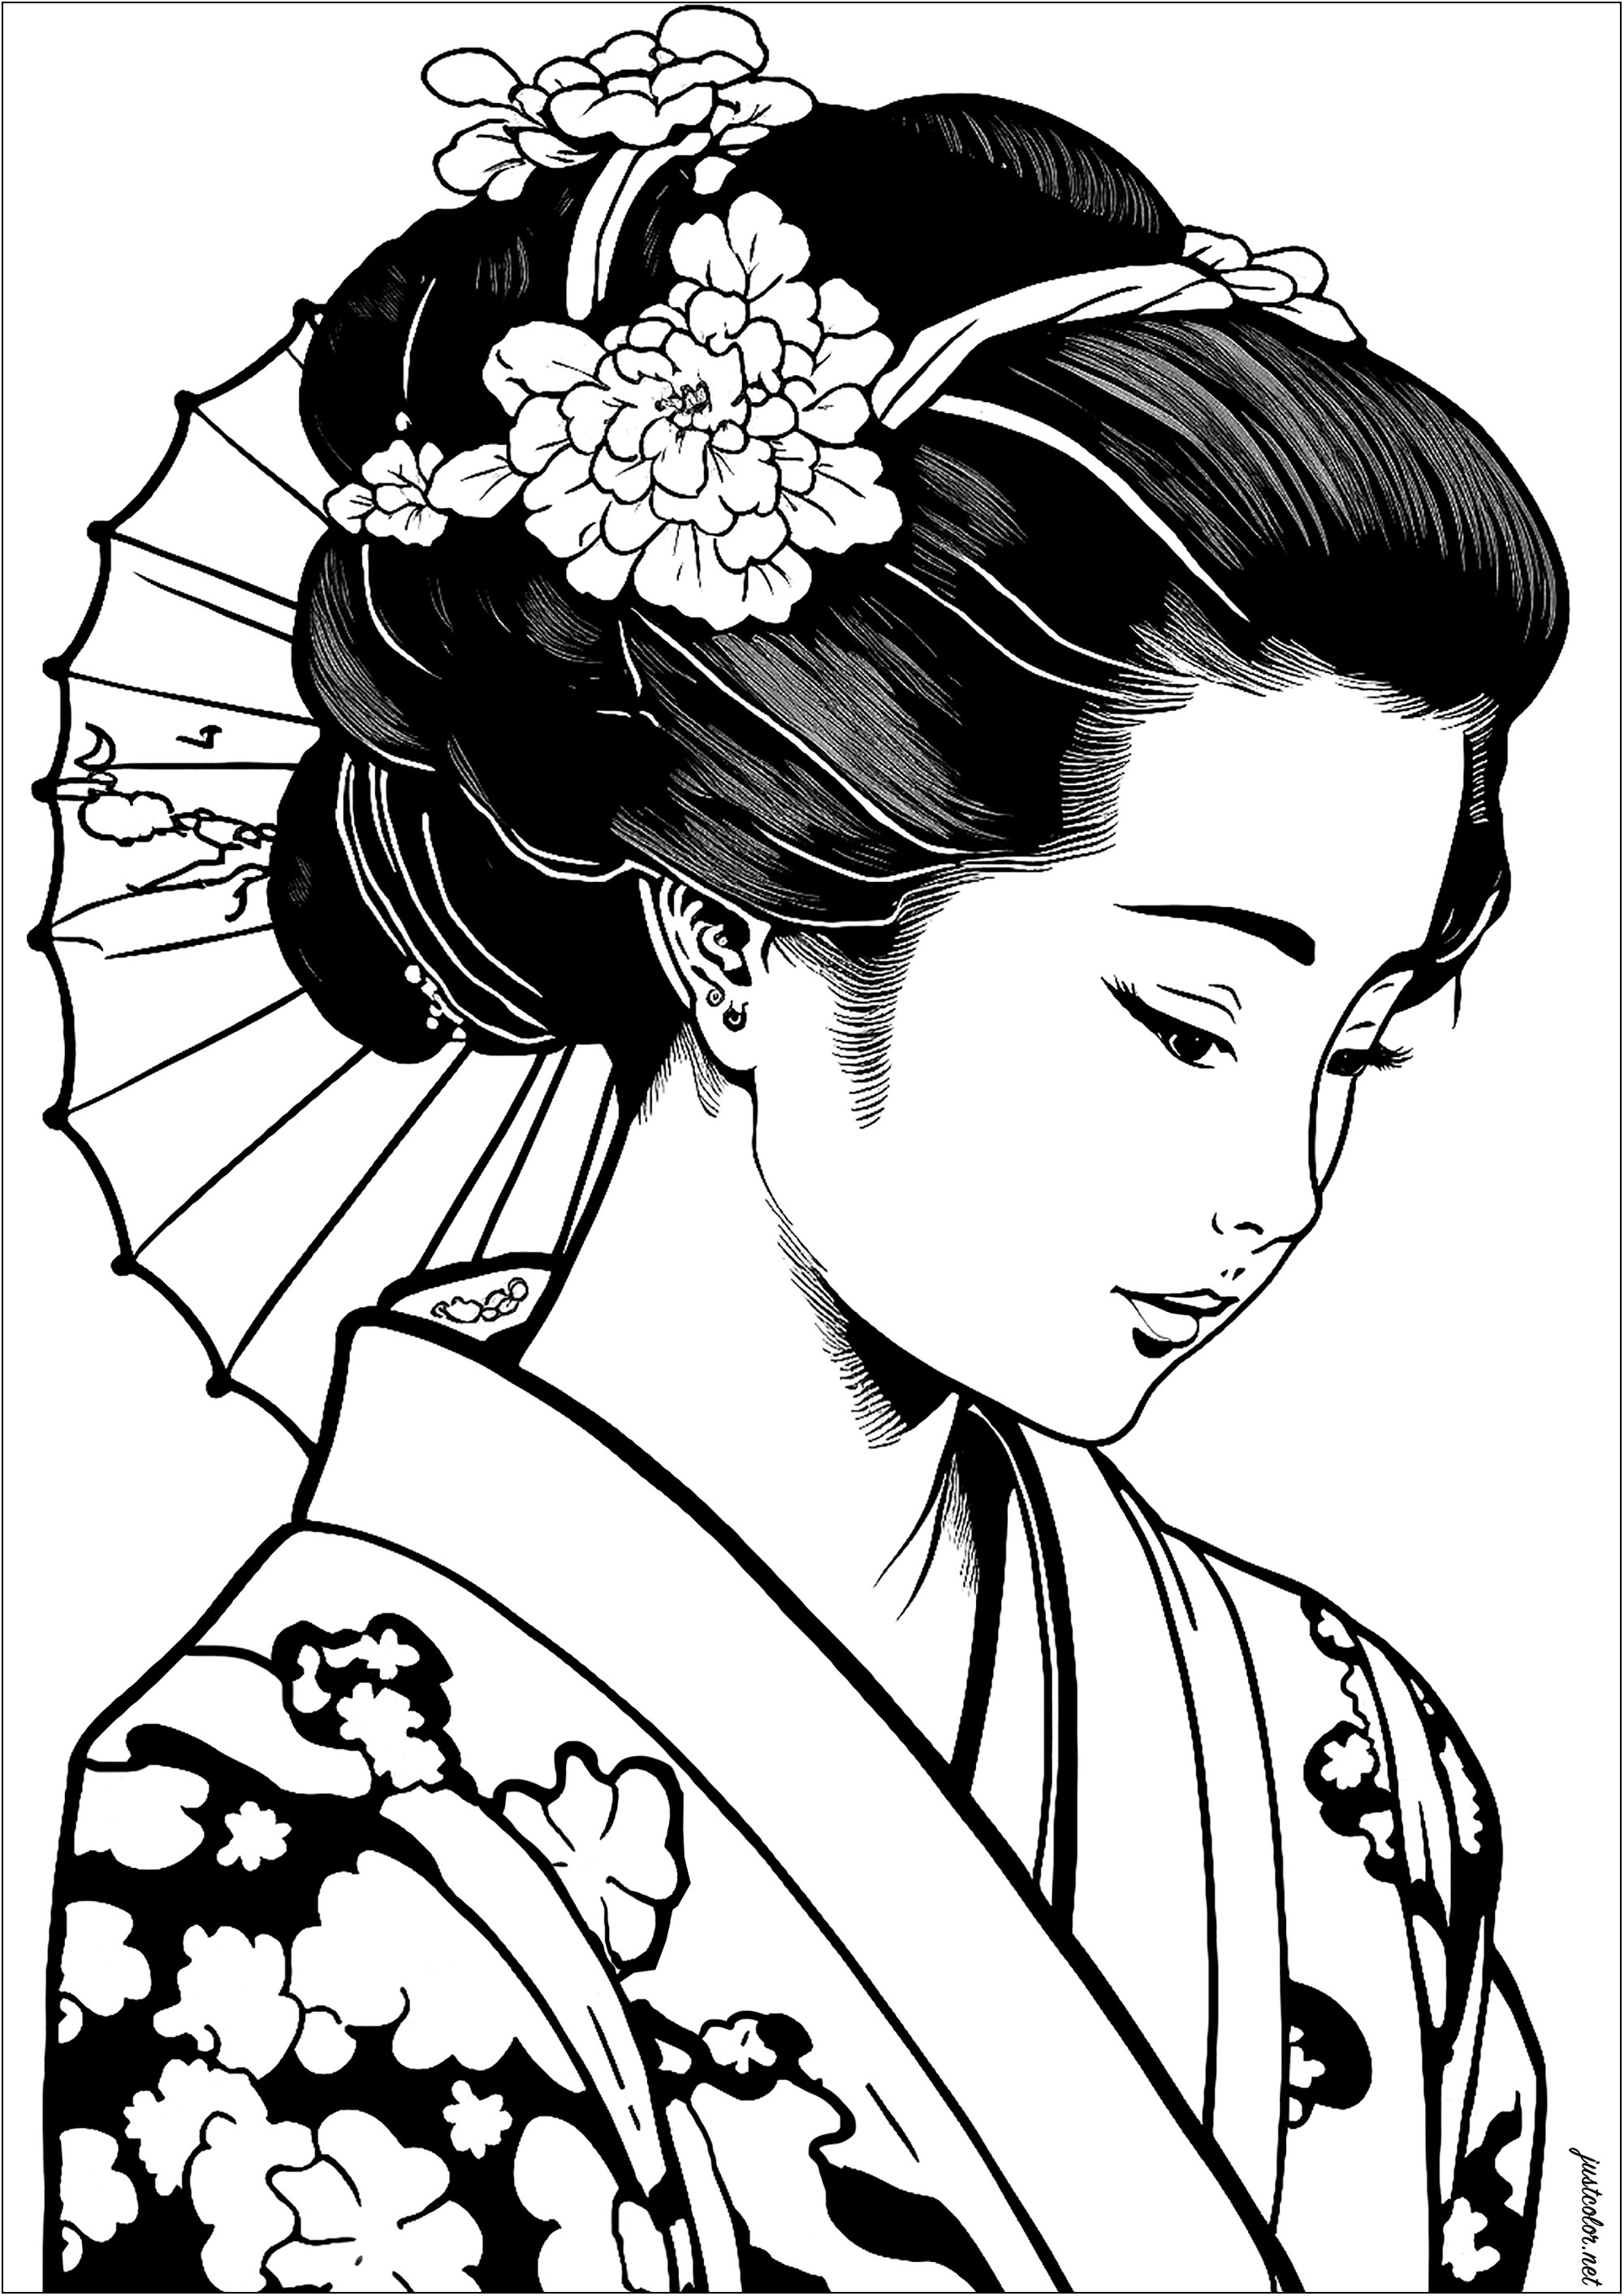 Una bella geisha, molto realistica, da colorare. Questa pagina da colorare è elegante e affascinante. Lasciate che la vostra immaginazione si scateni e aggiungete colori bellissimi al suo kimono, al suo ombrellino e ai fiori del suo cerchietto.